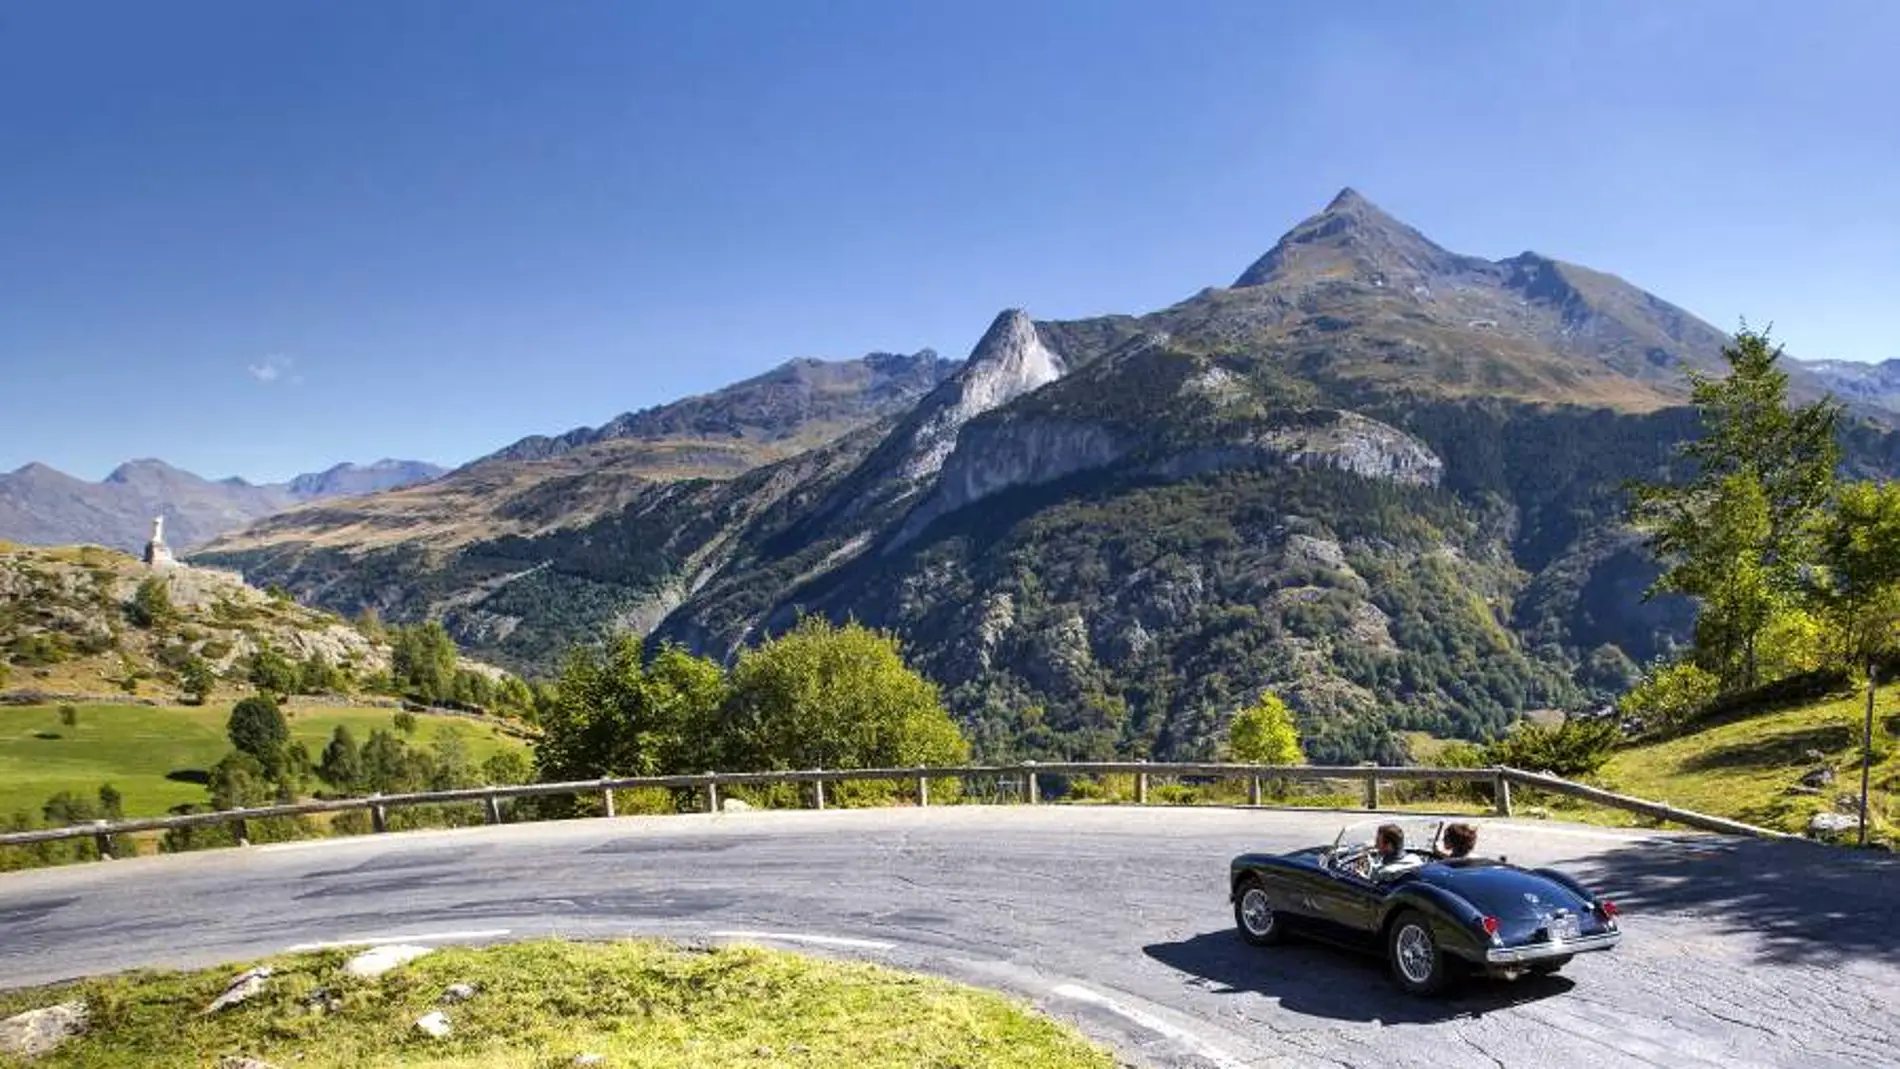 Pirineos Road Trip, una apasionante forma de viajar por el Pirineo